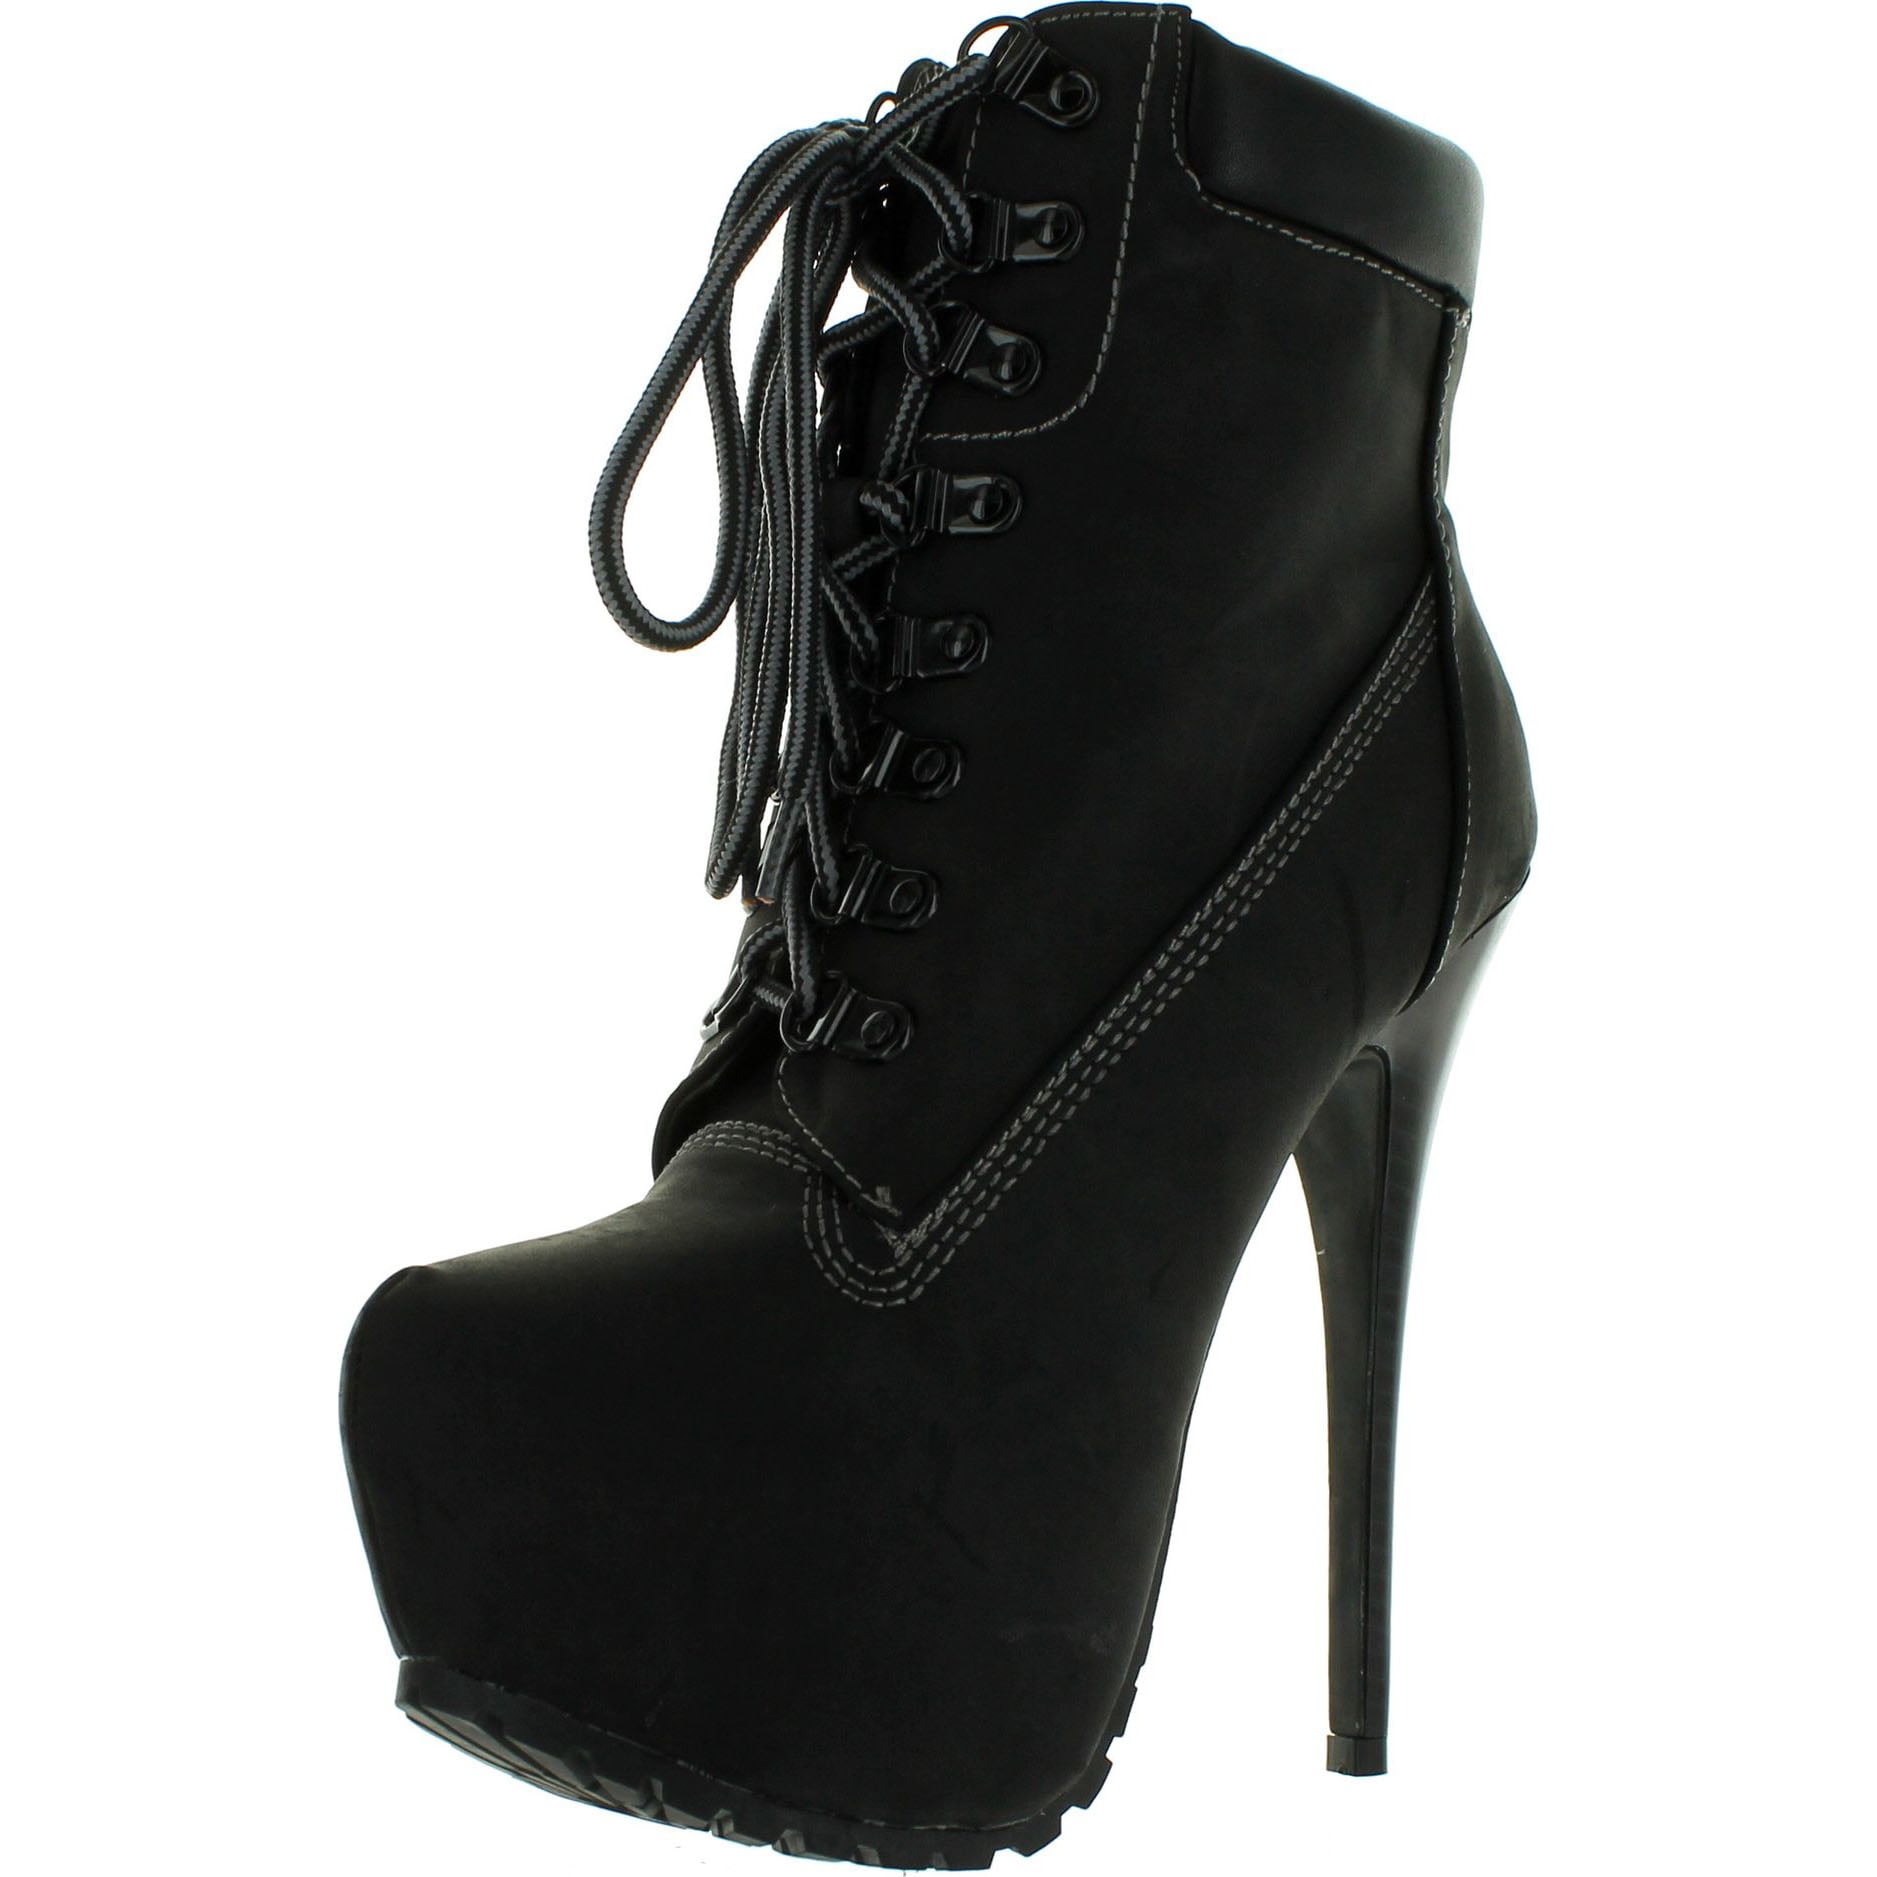 Breckelles Women Blazer-11 Boots, Black, 6 - Walmart.com